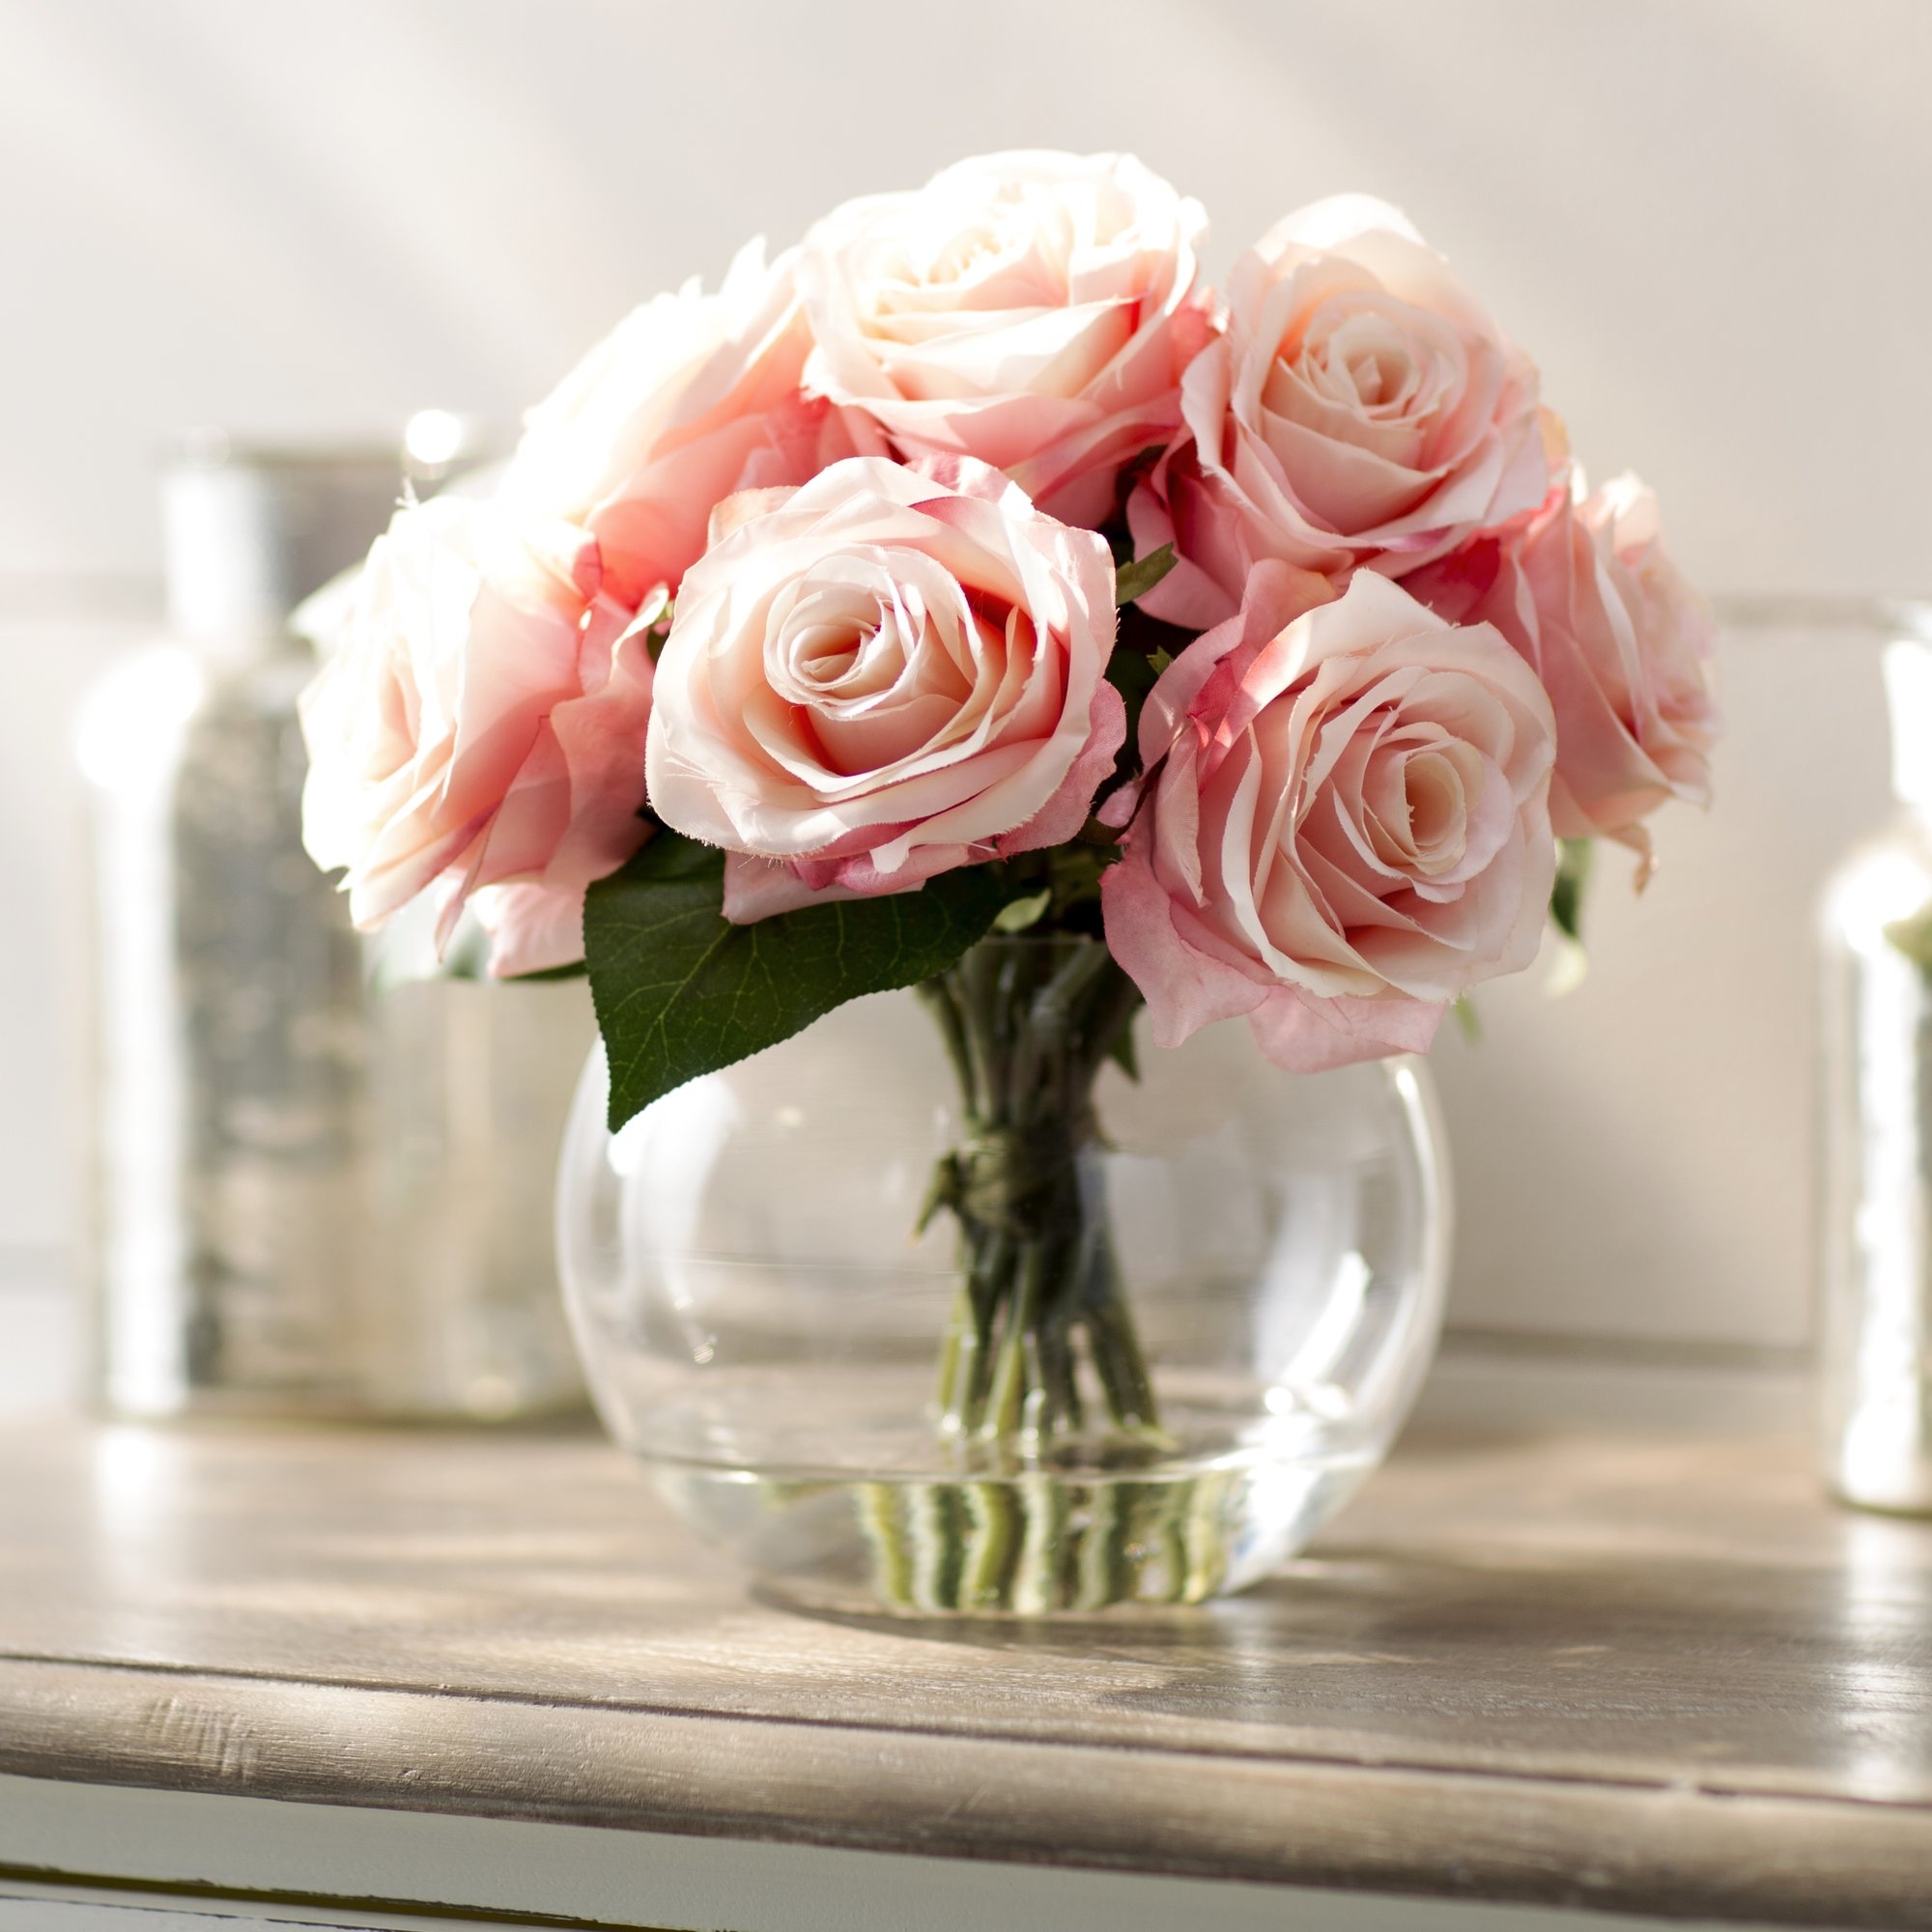 Roses in Glass Vase - Image 0